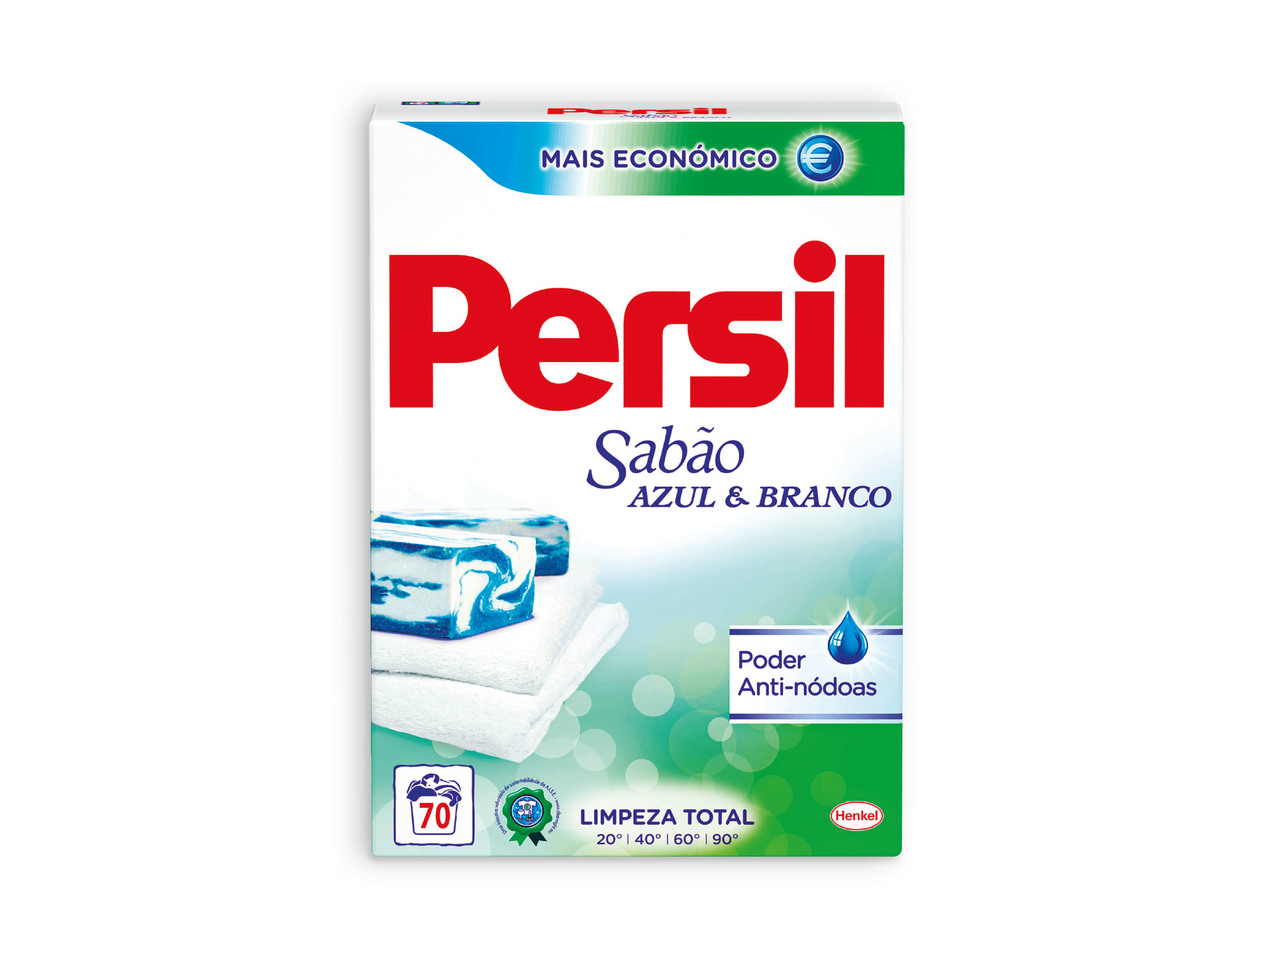 PERSIL(R) Detergente em Pó Sabão Azul & Branco